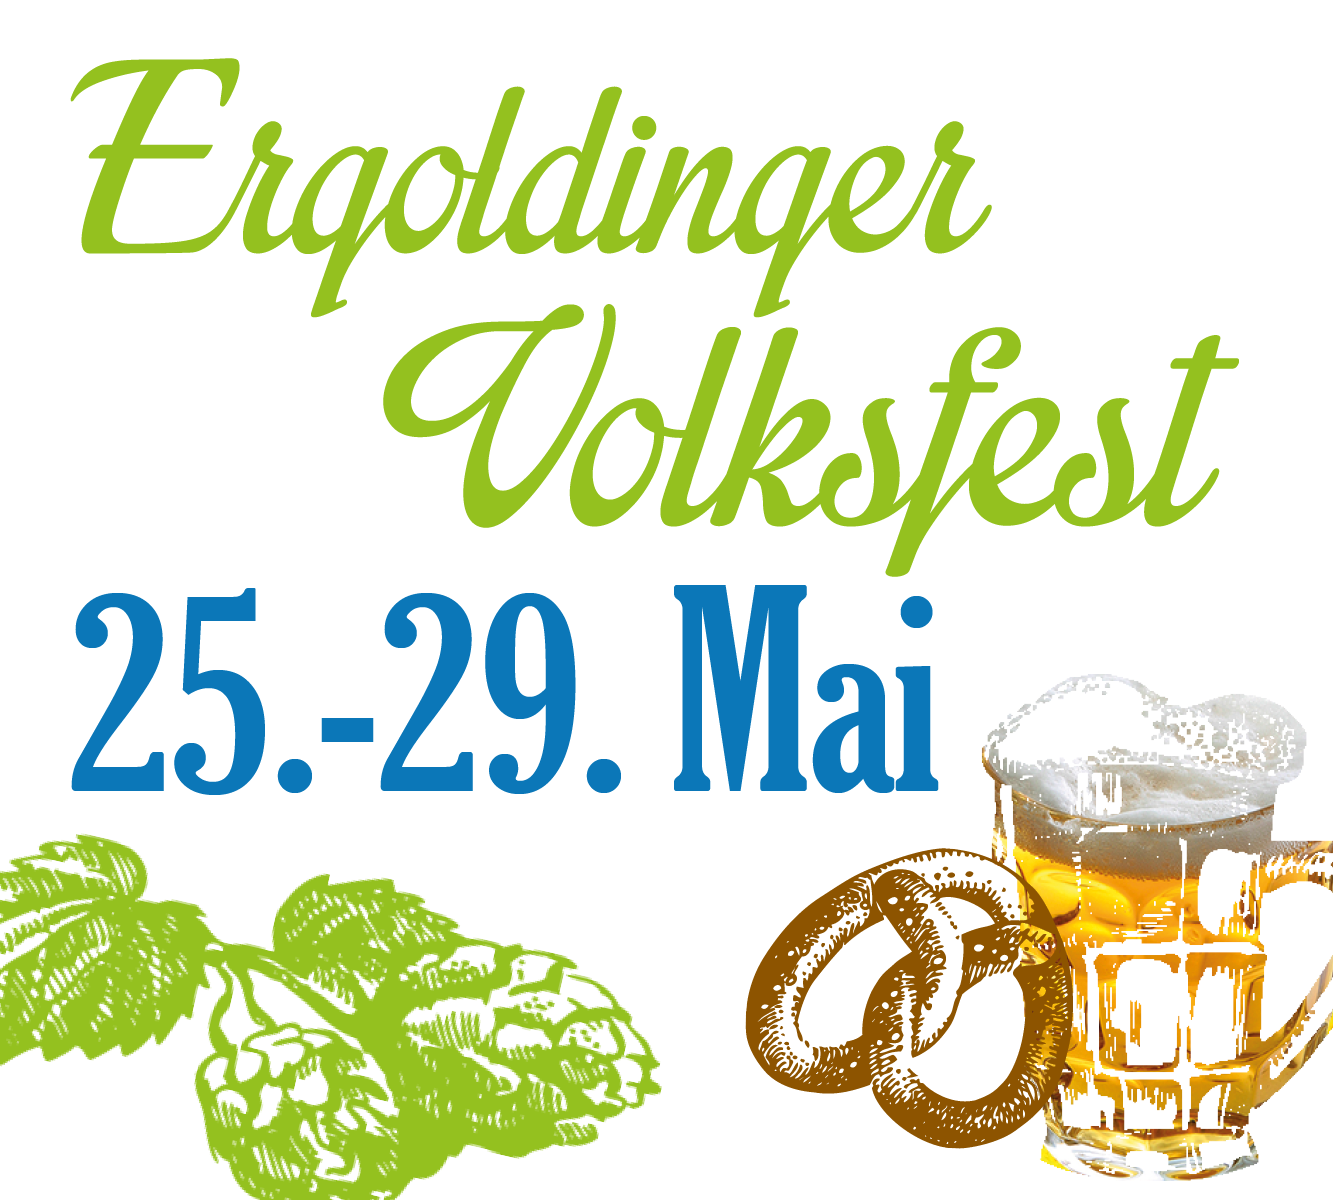 Ergoldinger Volksfest vom 25.05.2022 bis 29.05.2022